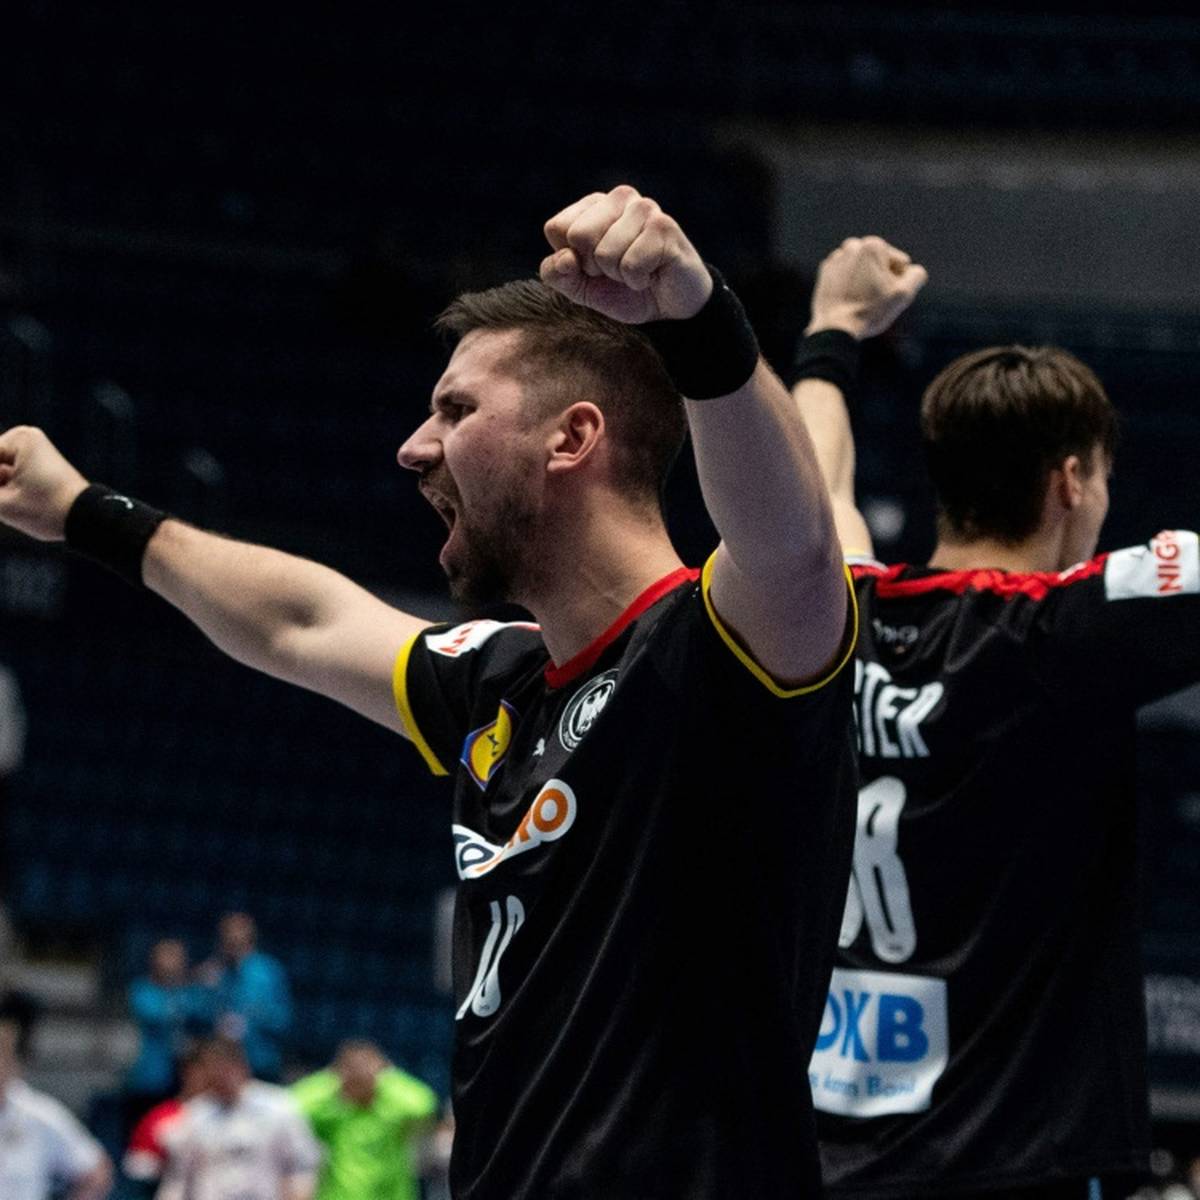 Der Deutsche Handballbund (DHB) hat nach dem letzten deutschen EM-Spiel ein gemischtes Turnierfazit gezogen.